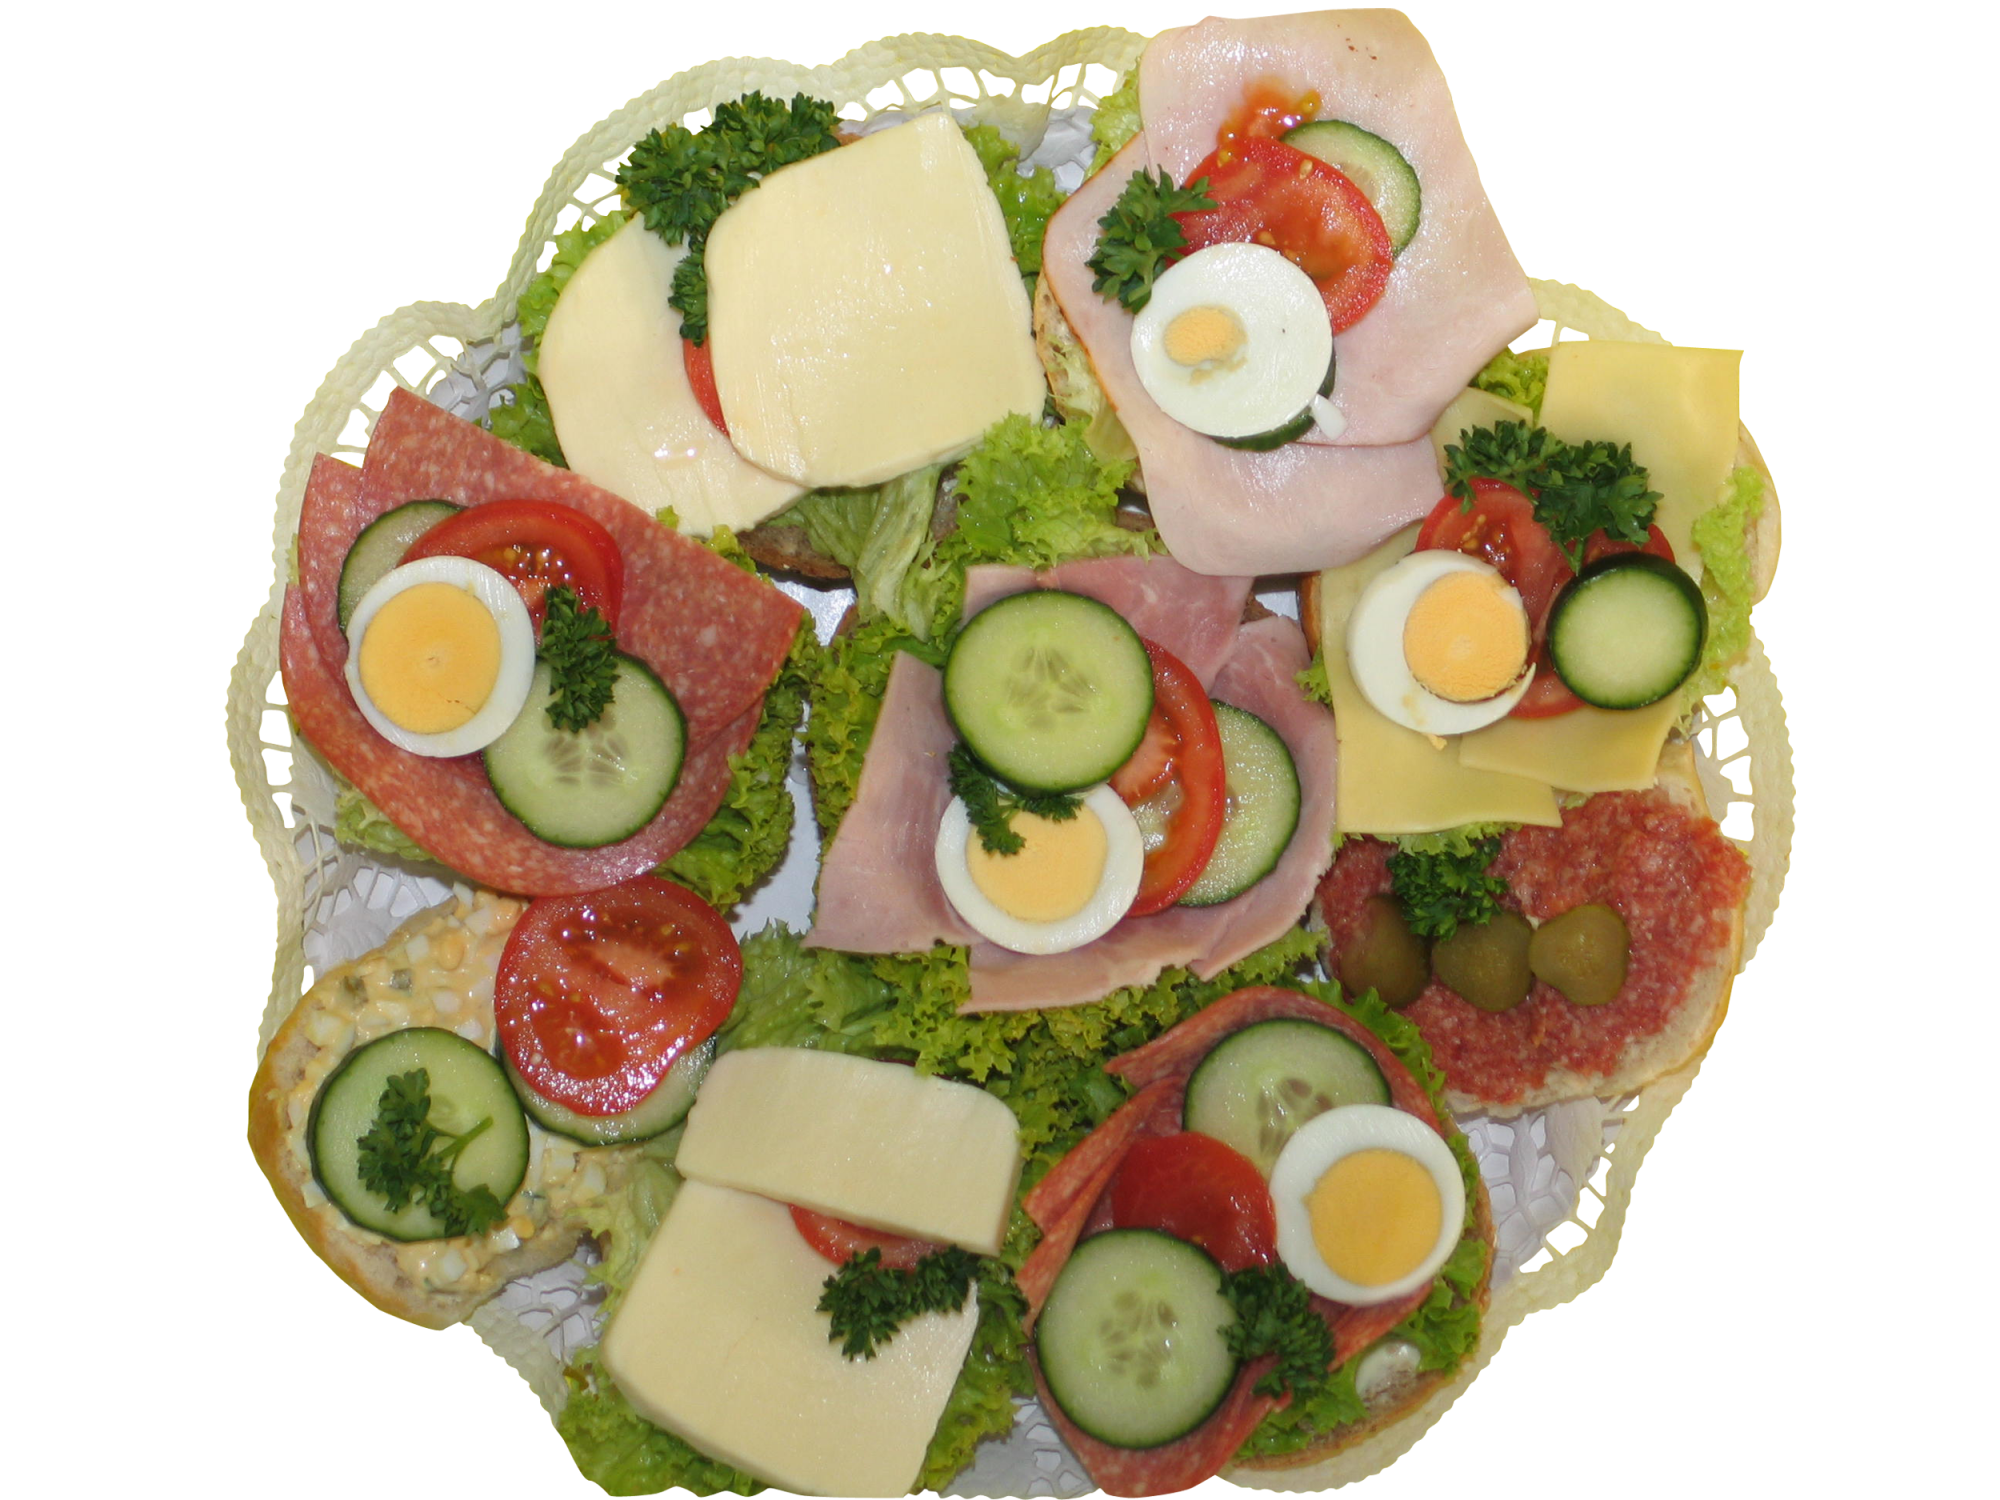 Teller mit belegten Brötchen mit Käse, Schinken, Salamie, Eiersalat, Salat, Tomaten, Gurken und Ei